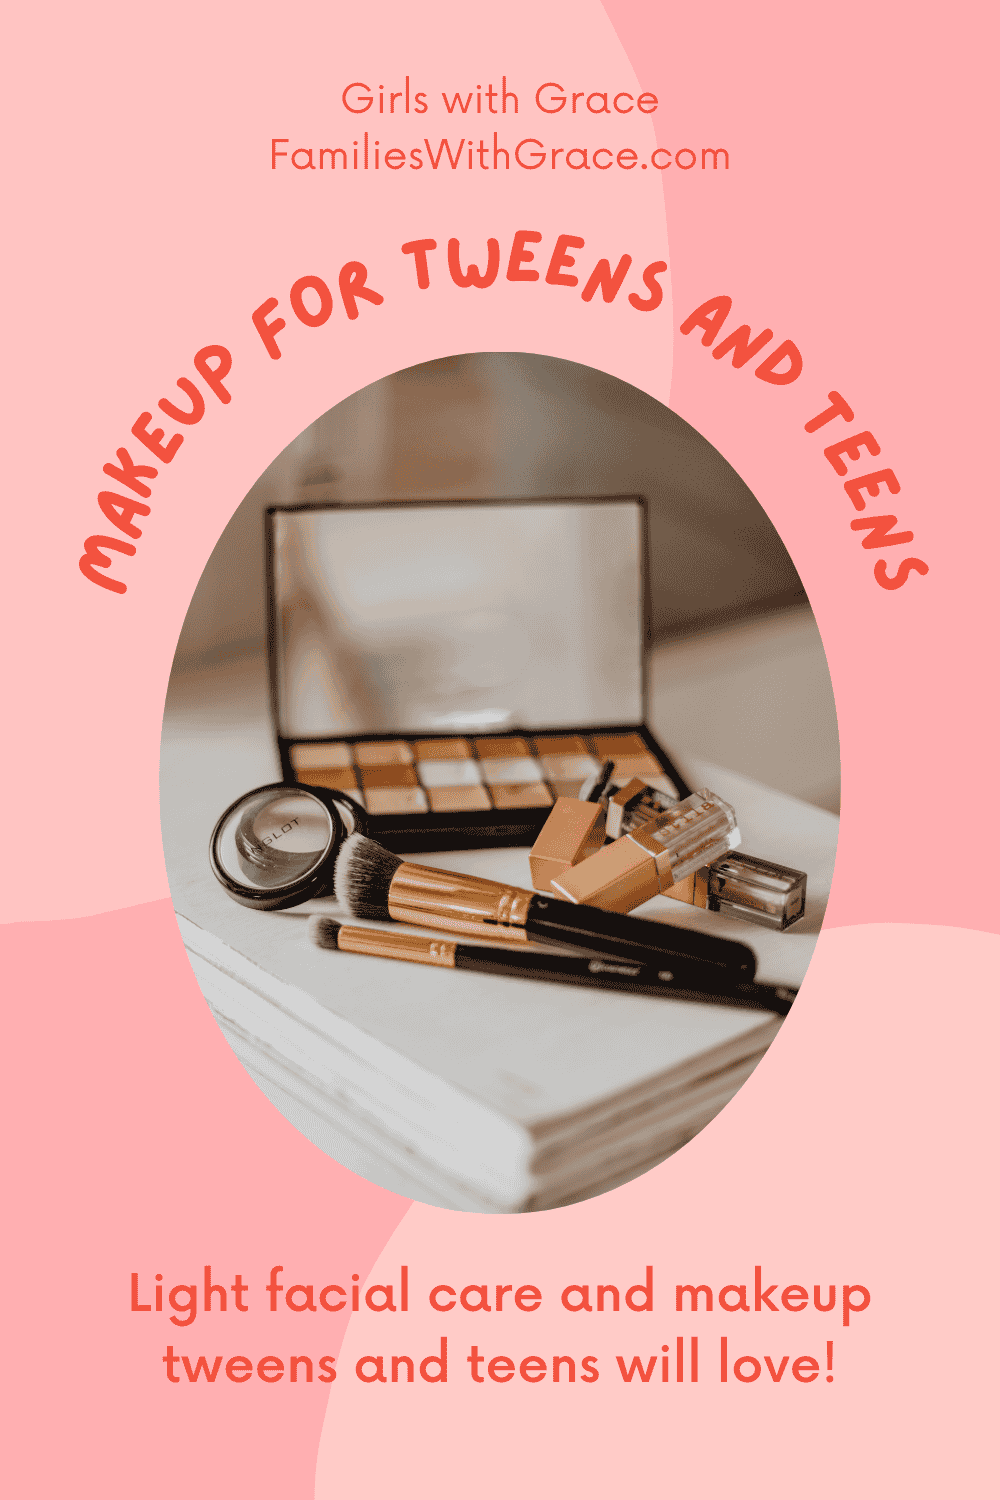 Makeup for tweens and teens